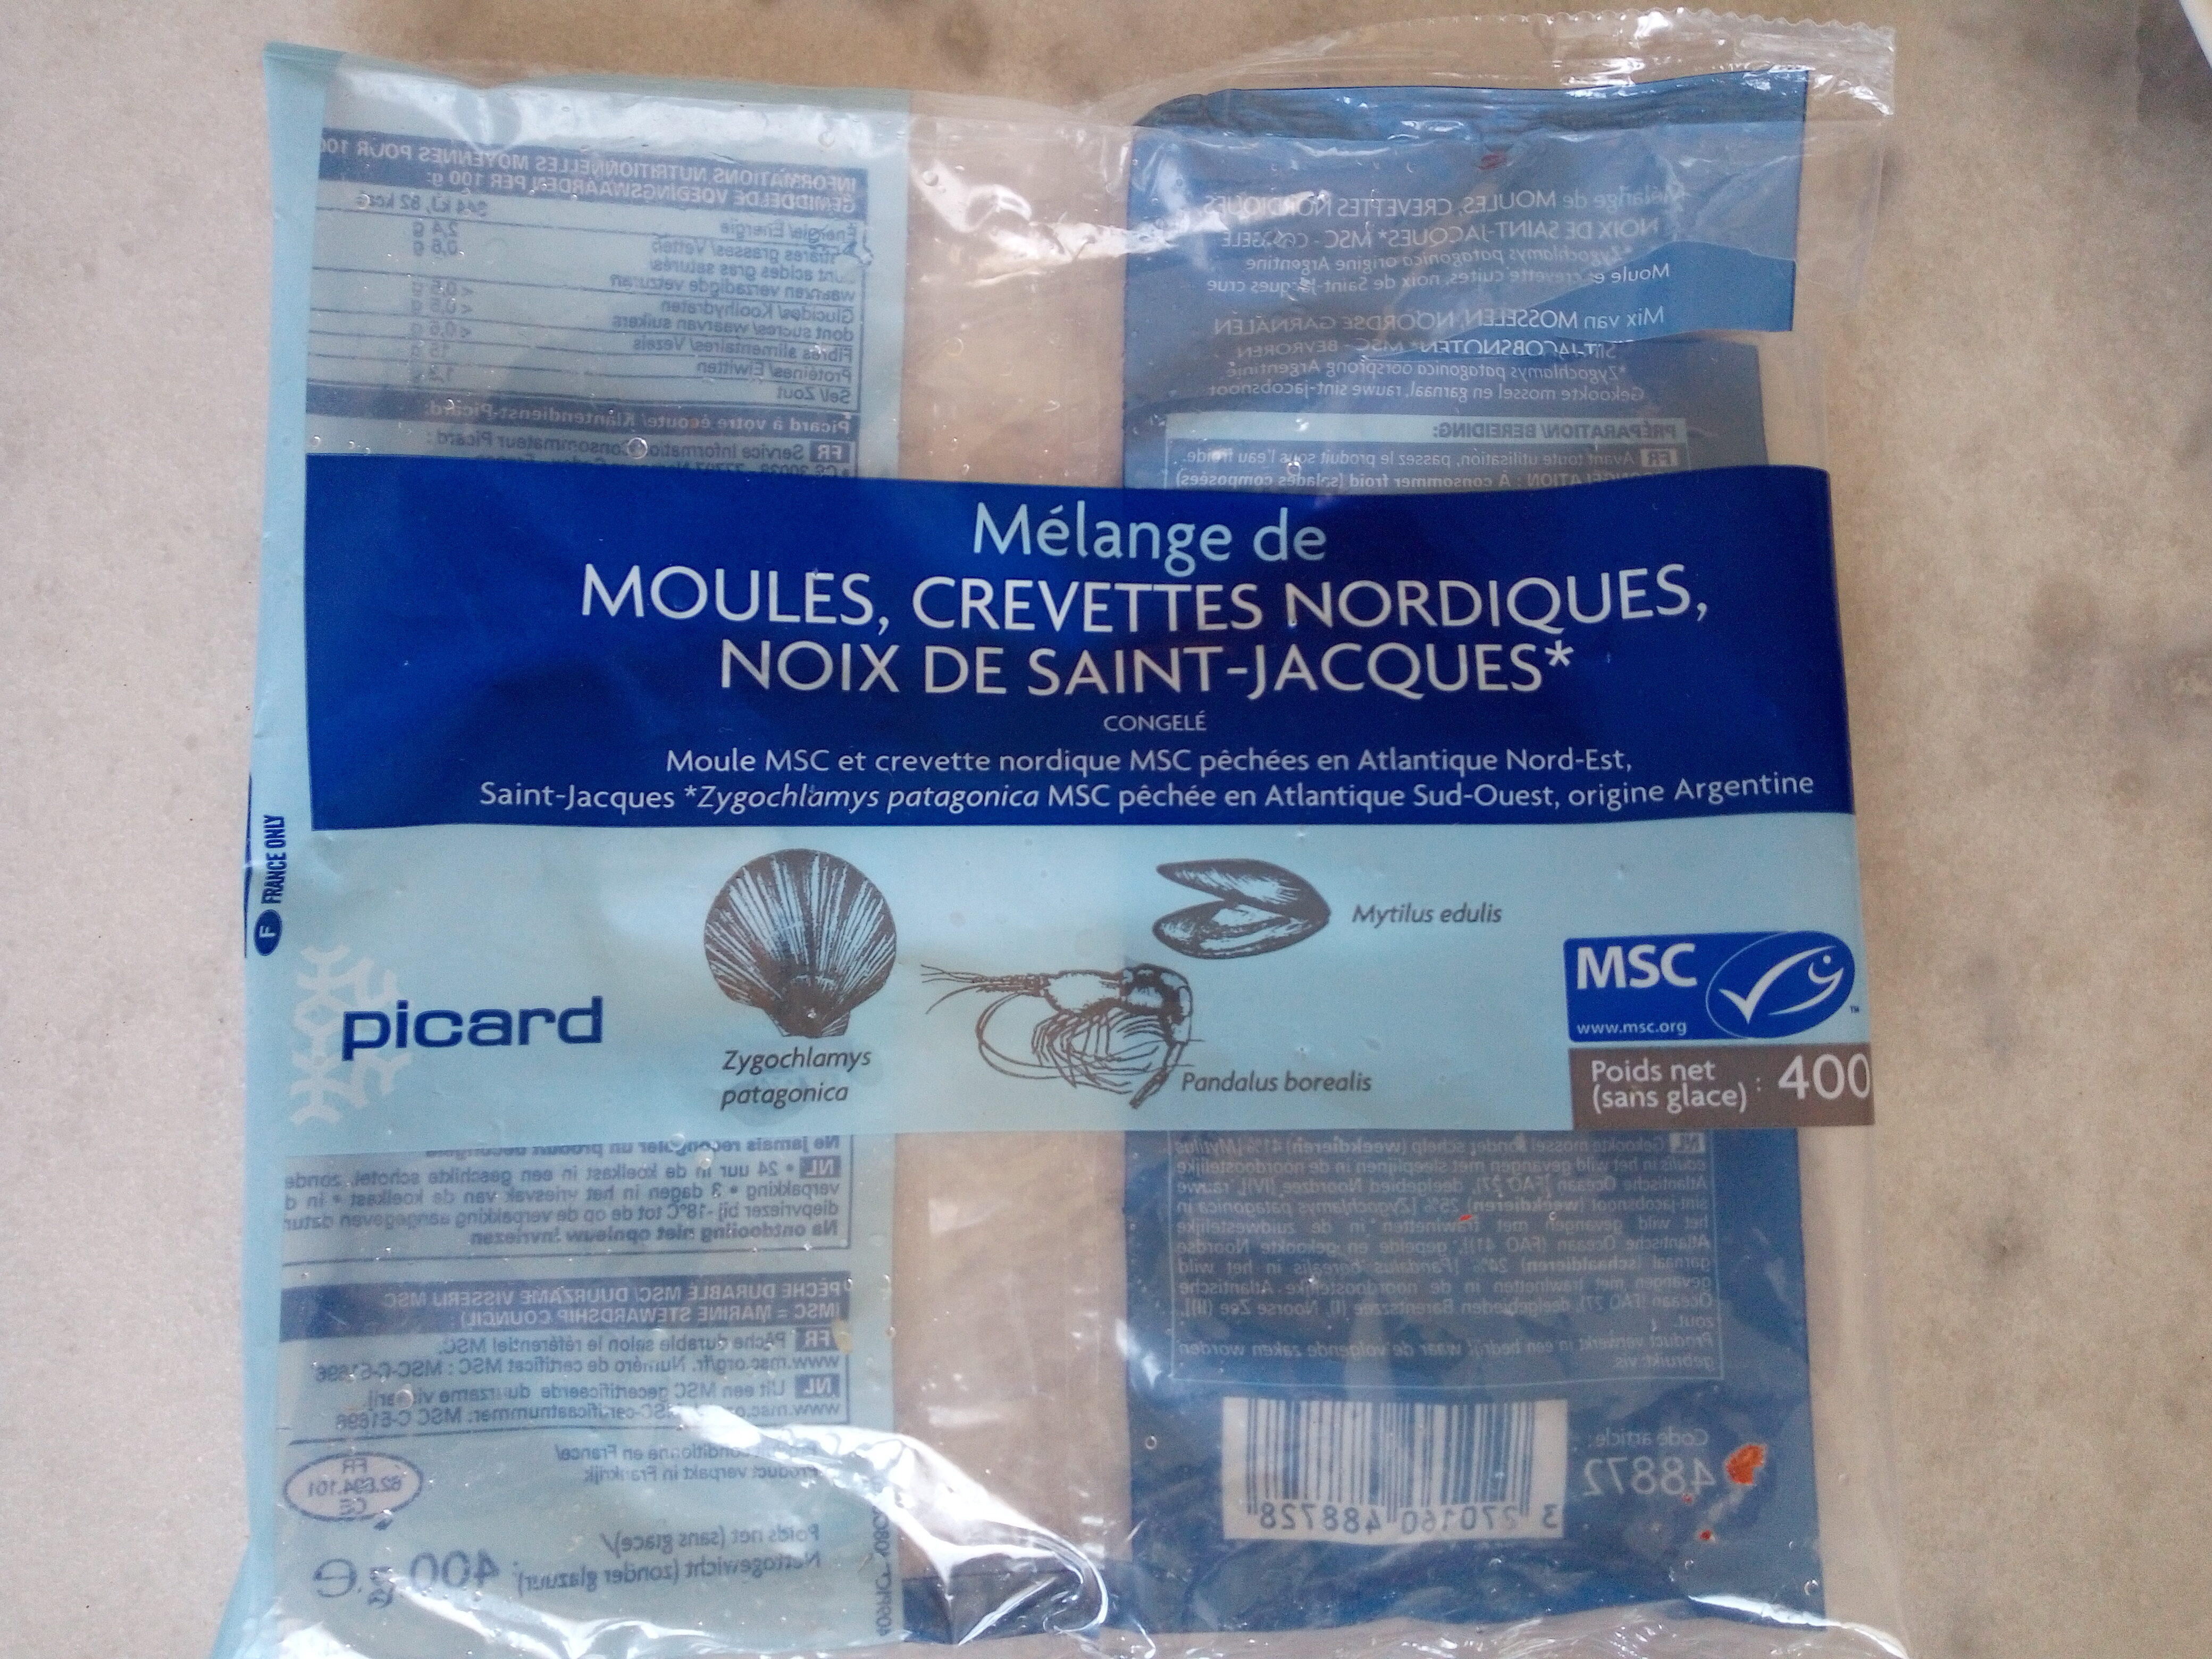 Mélange de moules, crevettes nordiques, noix de saint-jacques - Produit